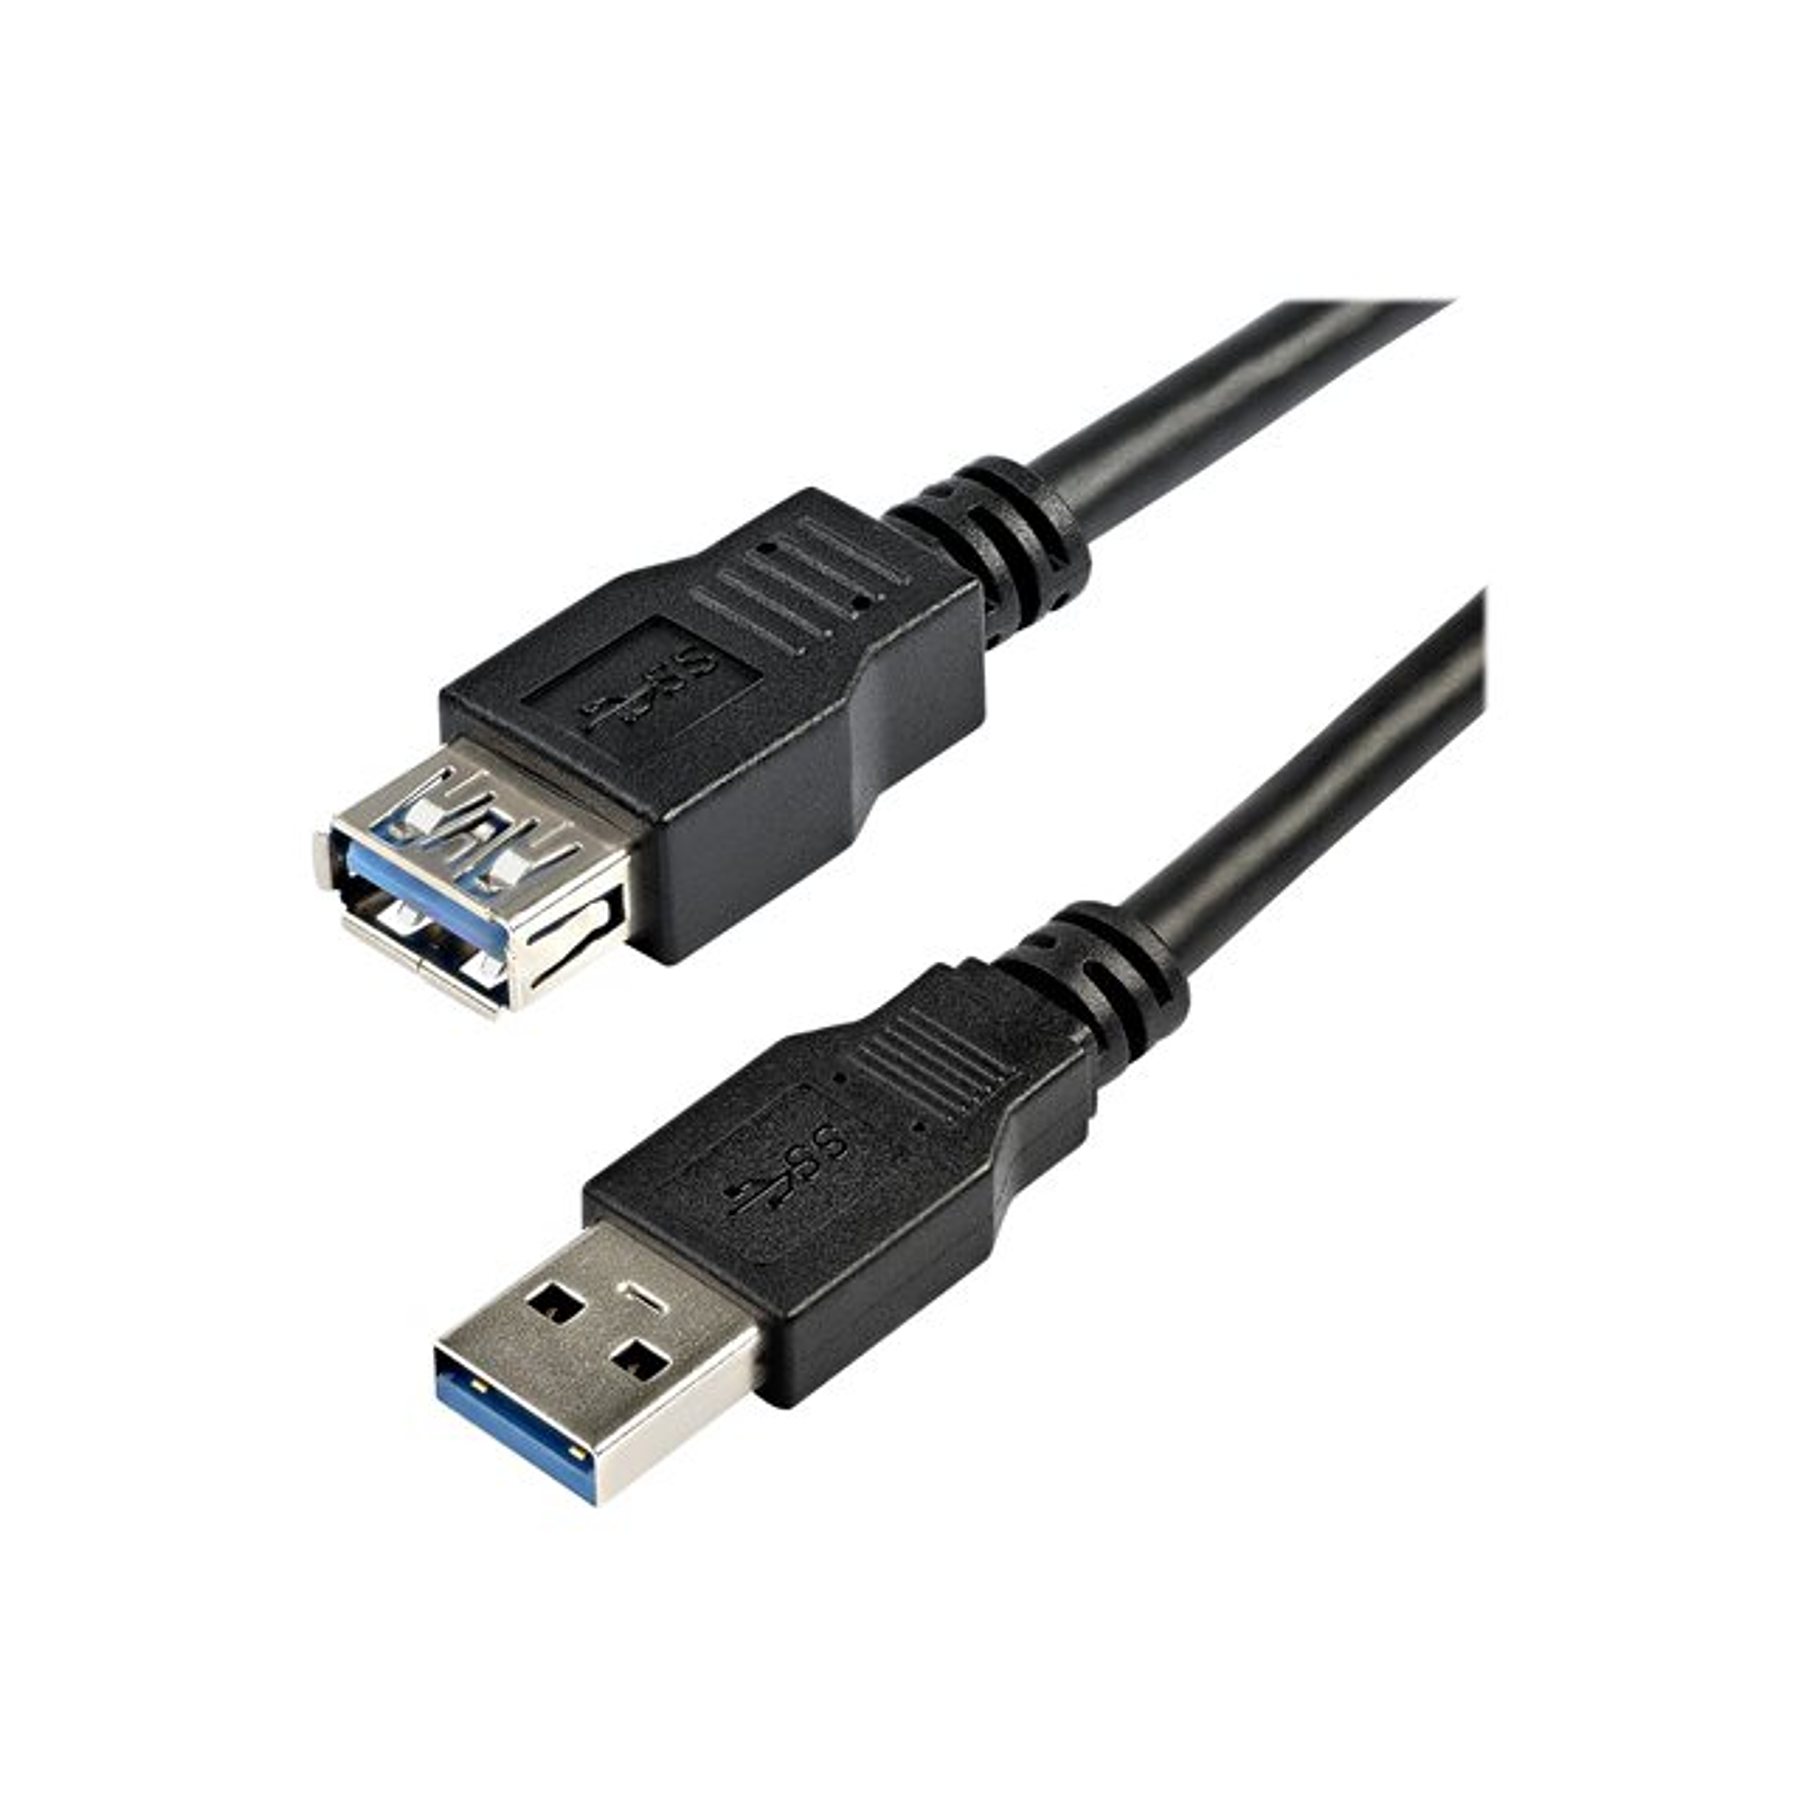 StarTech.com para los accesorios de conectividad de alto rendimiento. Cable USB 3.0 de 2m Extensor Alargador USB A Mac